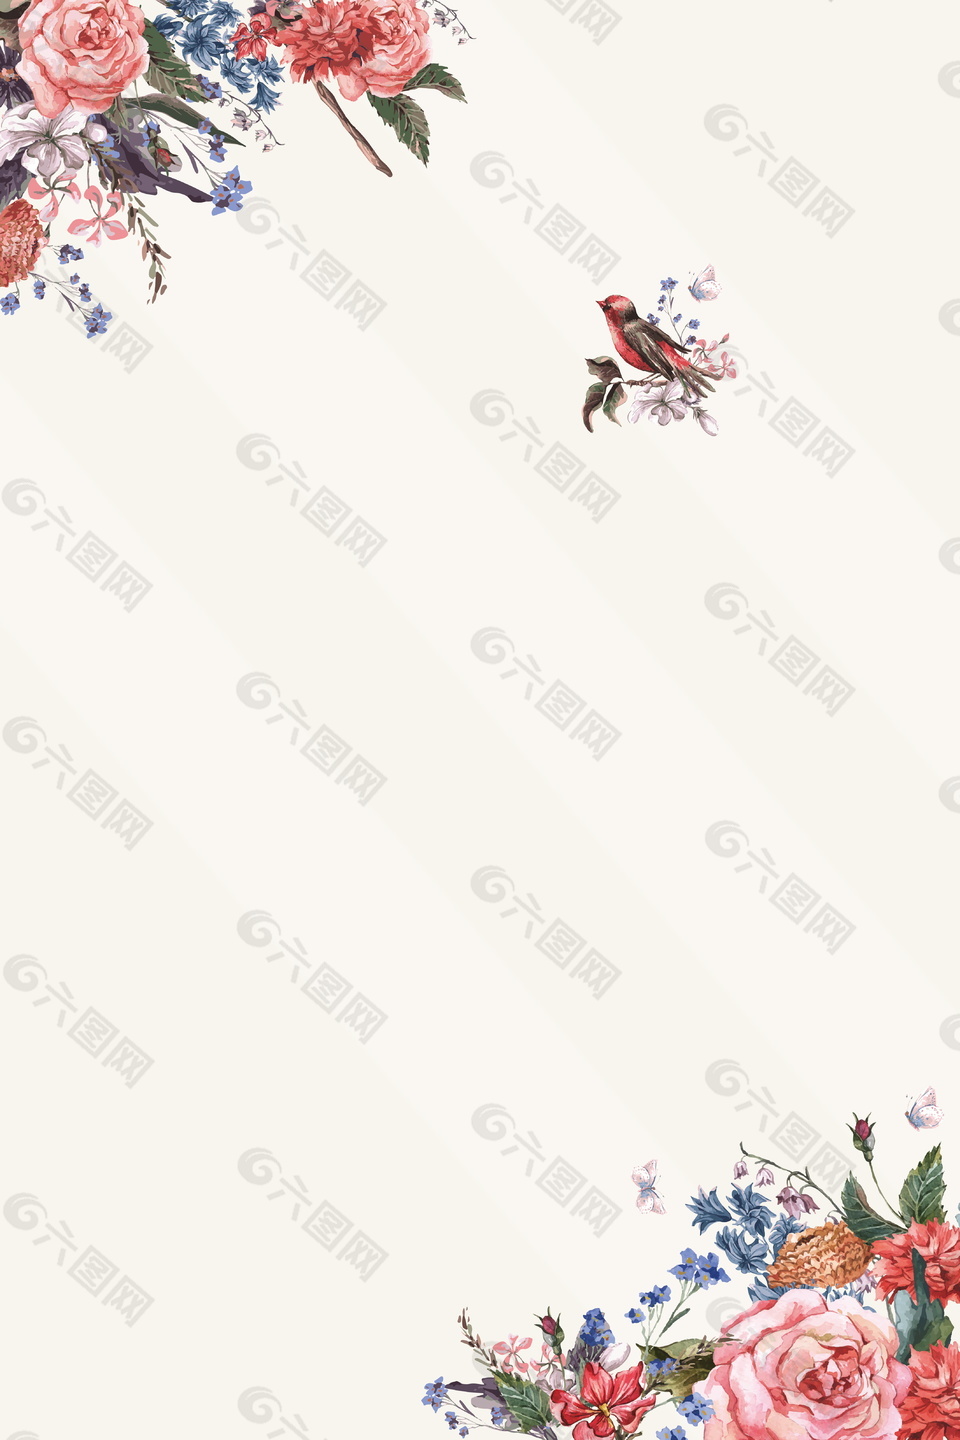 彩绘鲜花花枝喜鹊日系文艺范广告背景素材